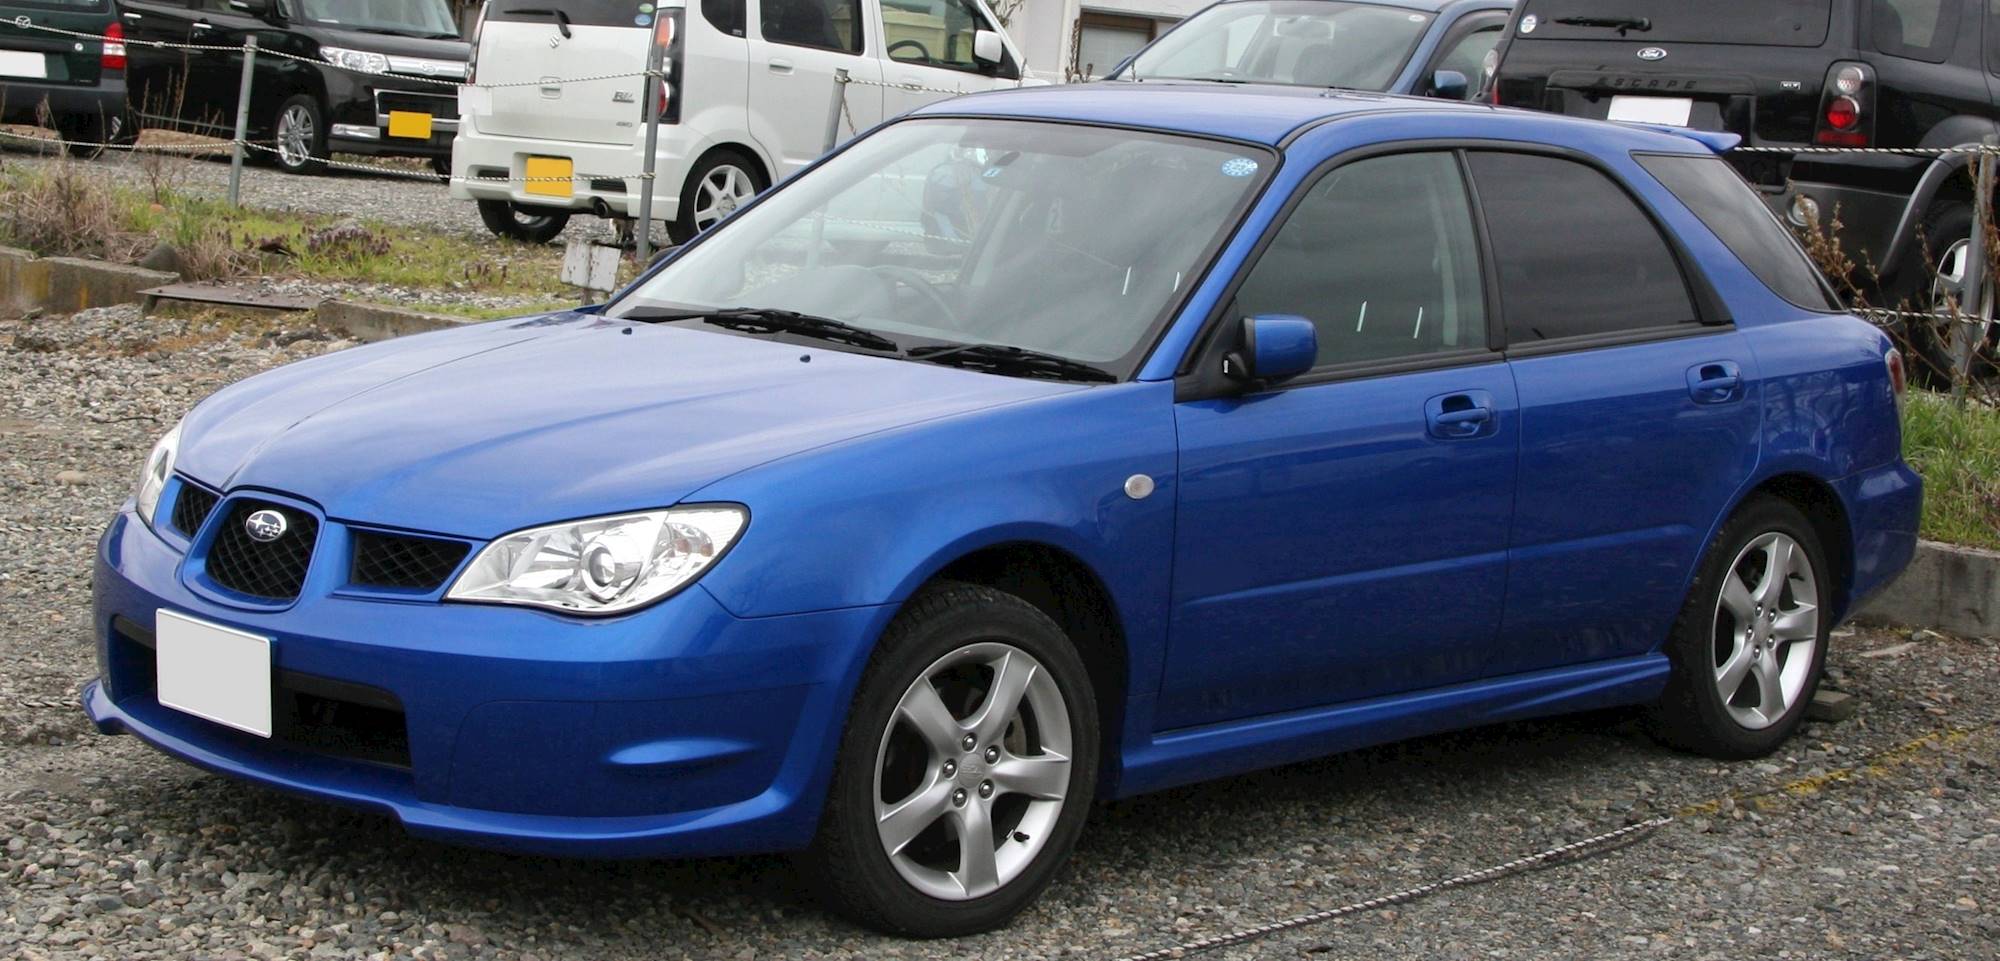 2007 Subaru Impreza Wrx Limited Wagon 2 5l Turbo Awd